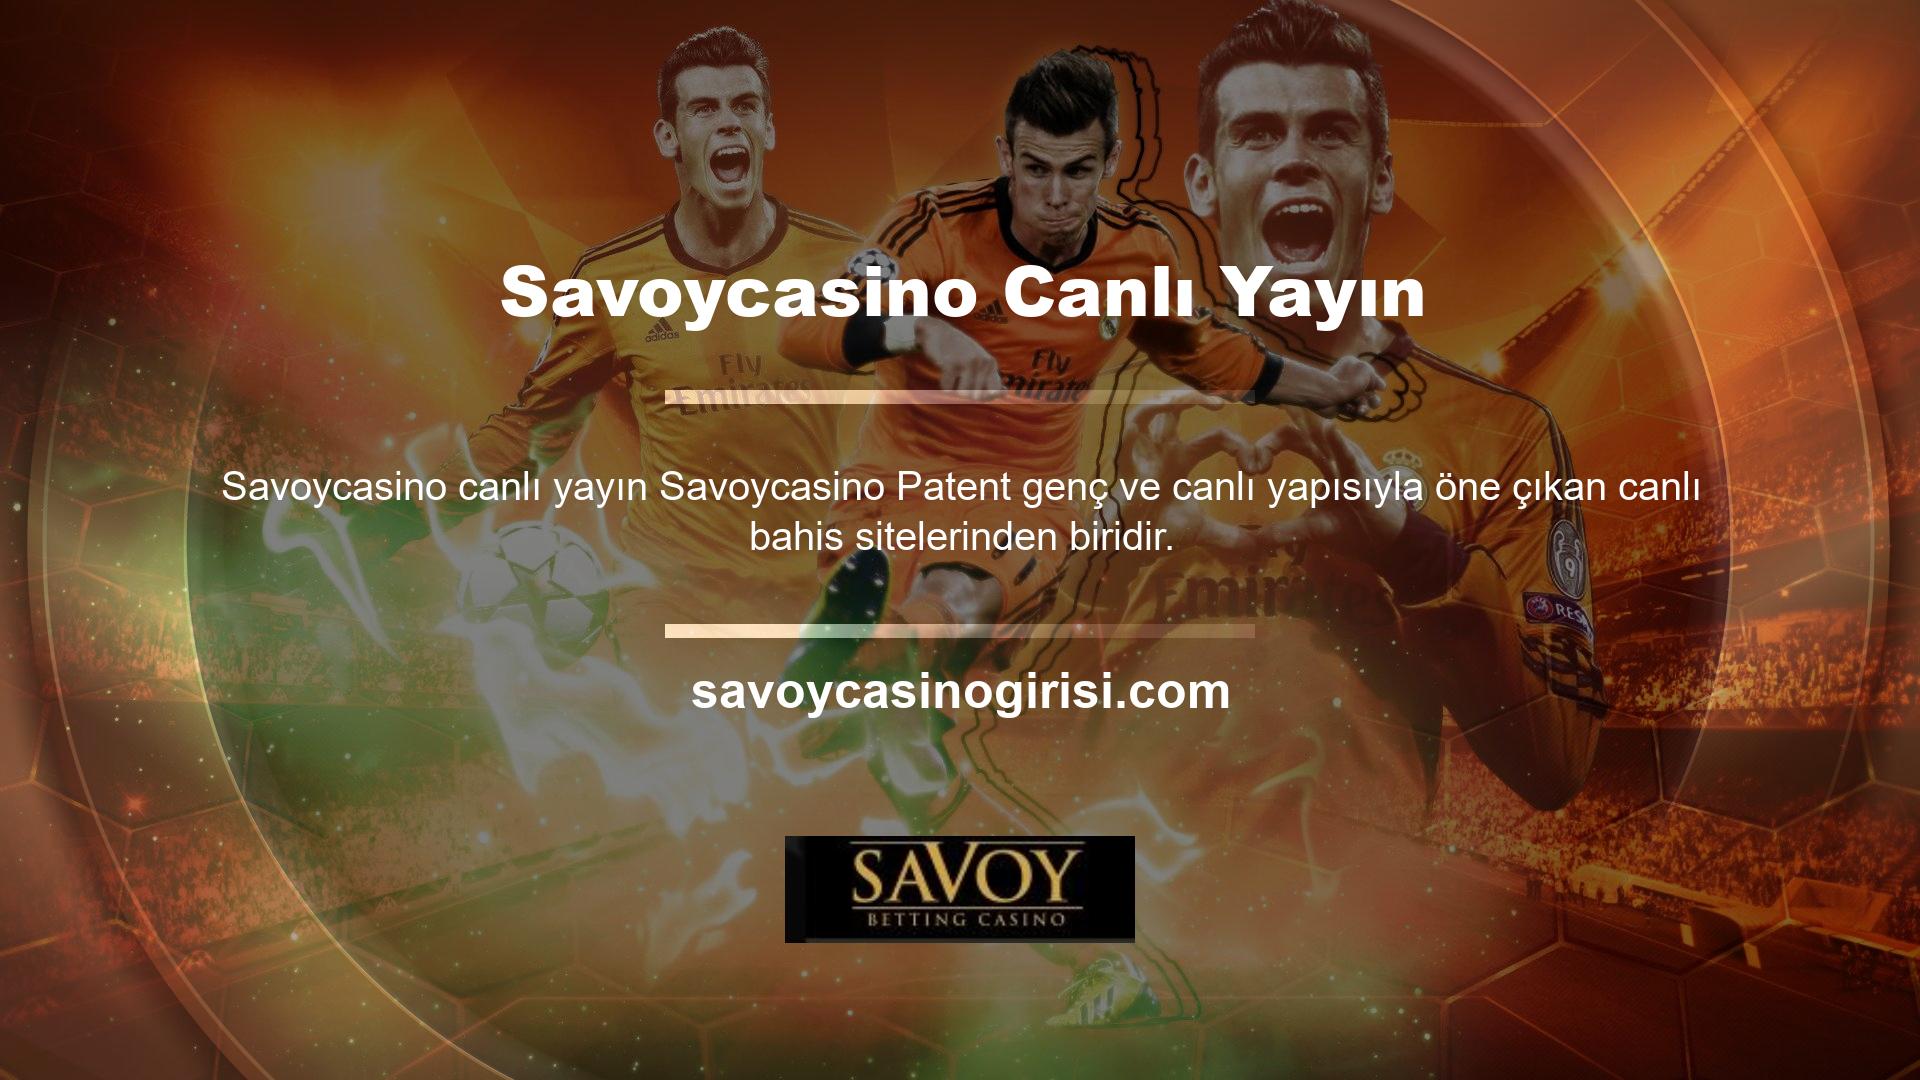 Savoycasino, canlı bahis sunan en büyük bahis sitelerinden biridir